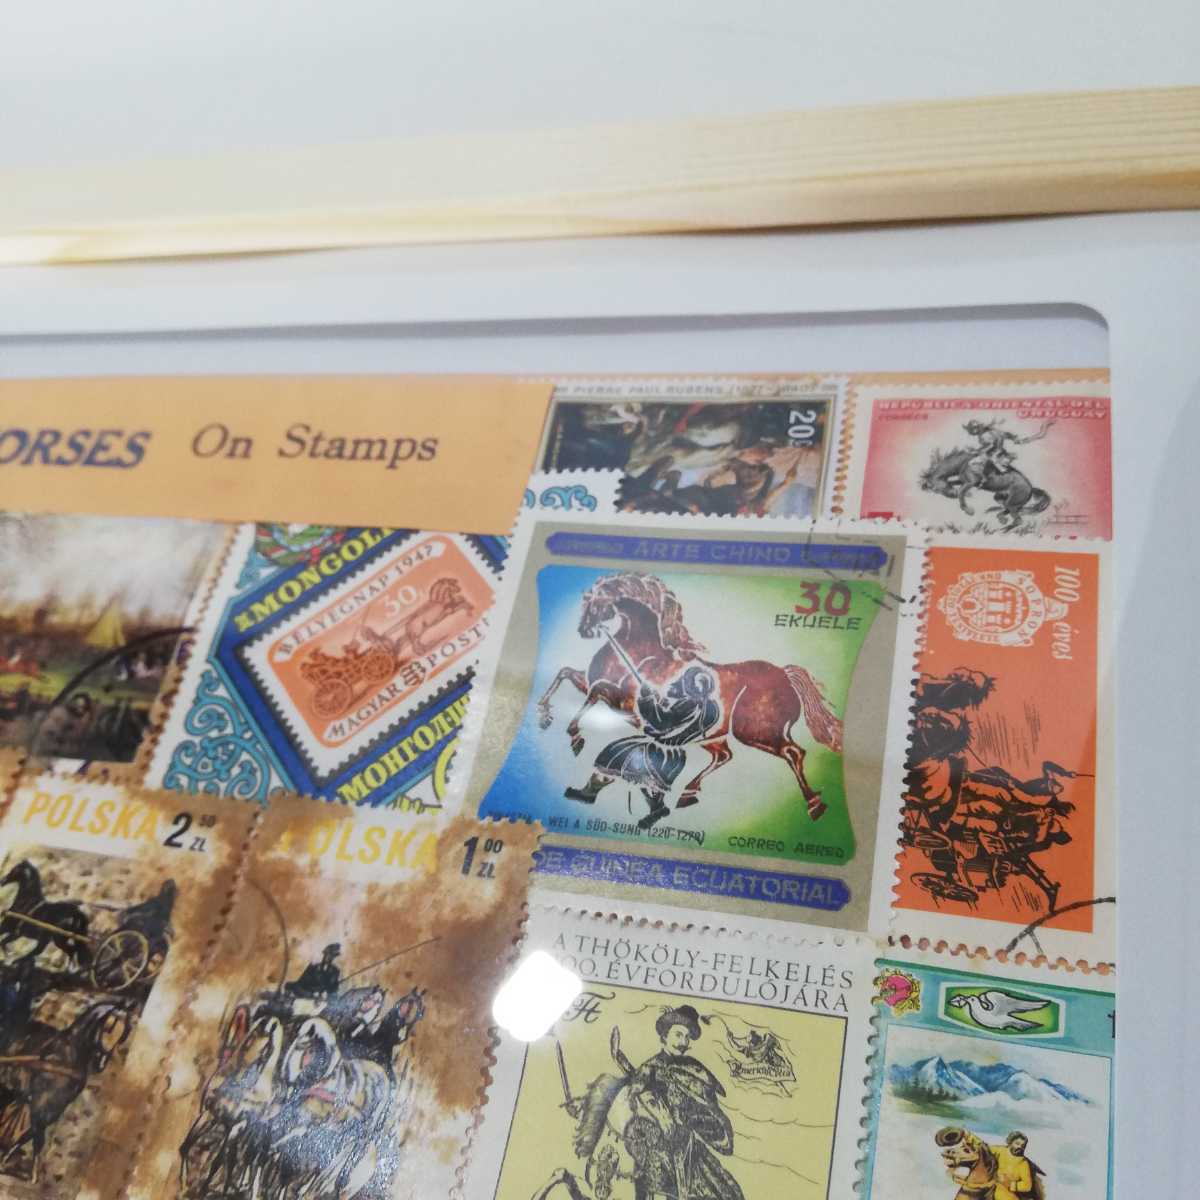 Vintage HORSES On Stamps 世界の馬の切手 額装品アート 32cm×23.5cm [壁掛け ビンテージ雑貨 海外土産物 モンゴル ブータン ポーランド]の画像6